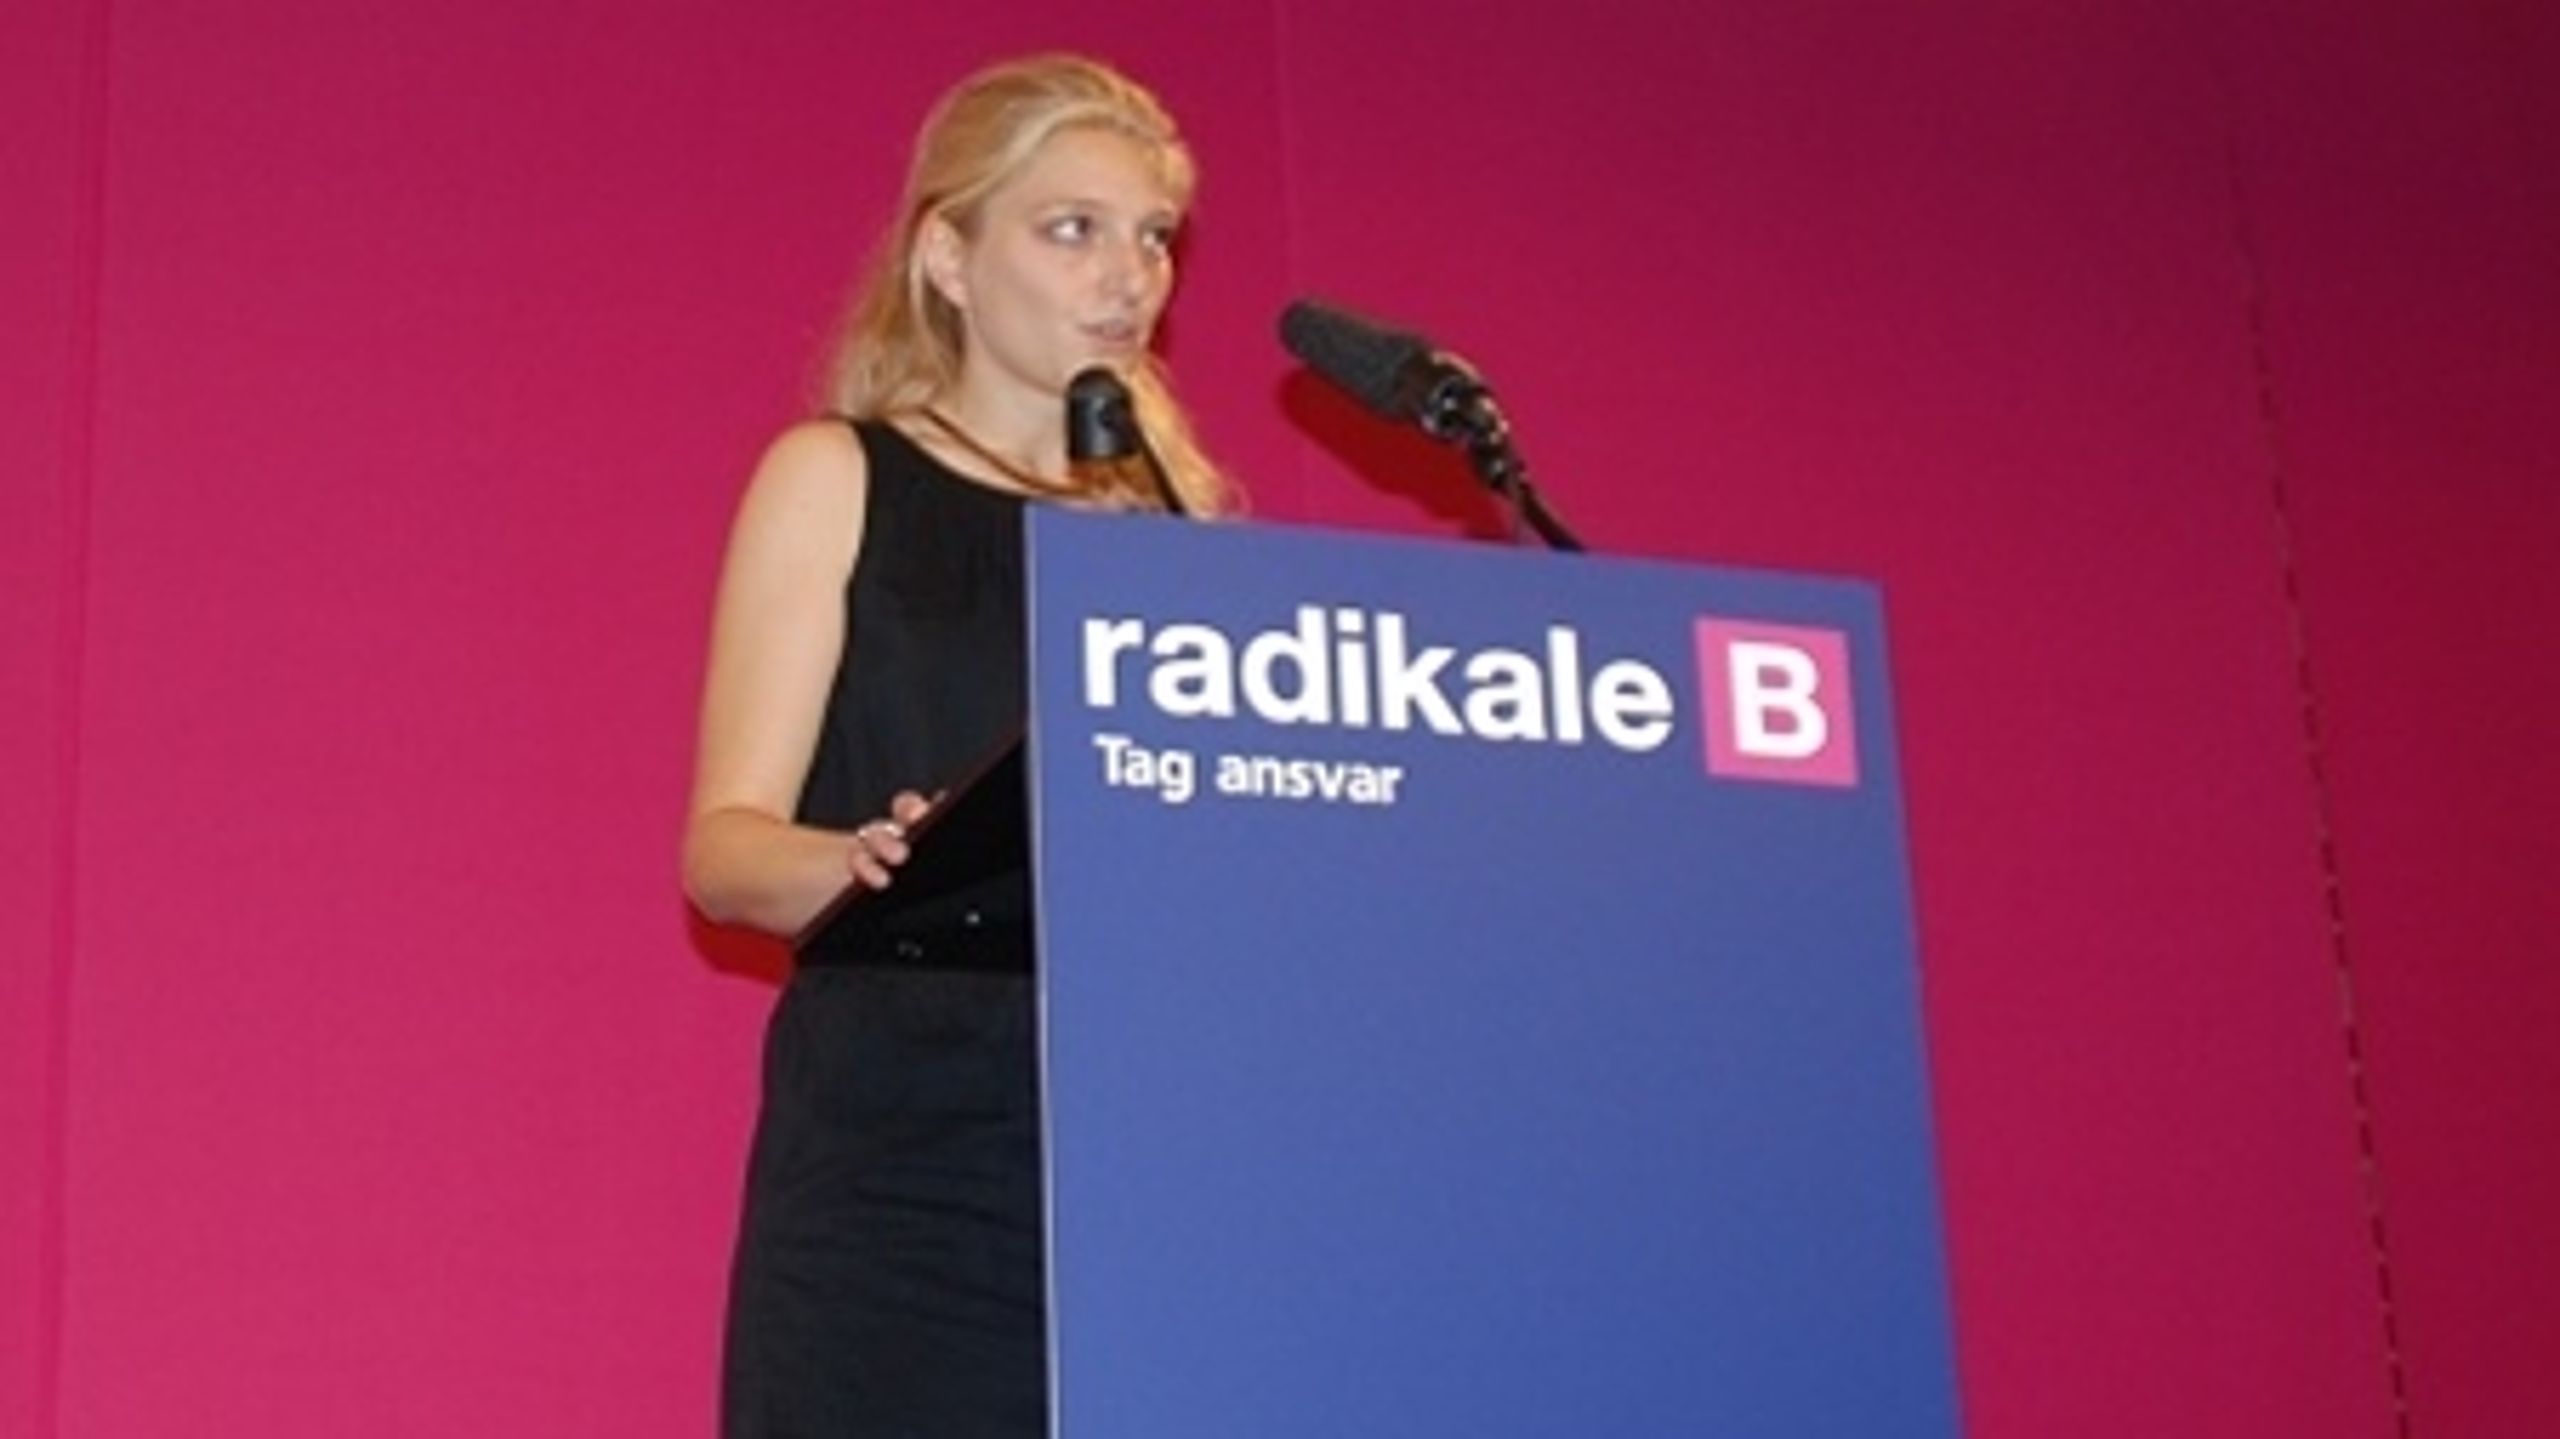 Zenia Stampe genvandt posten som næstformand i det Radikale Venstre, selvom ni ud af ti storkredsformænd støttede modkandidaten Sander Jensen.